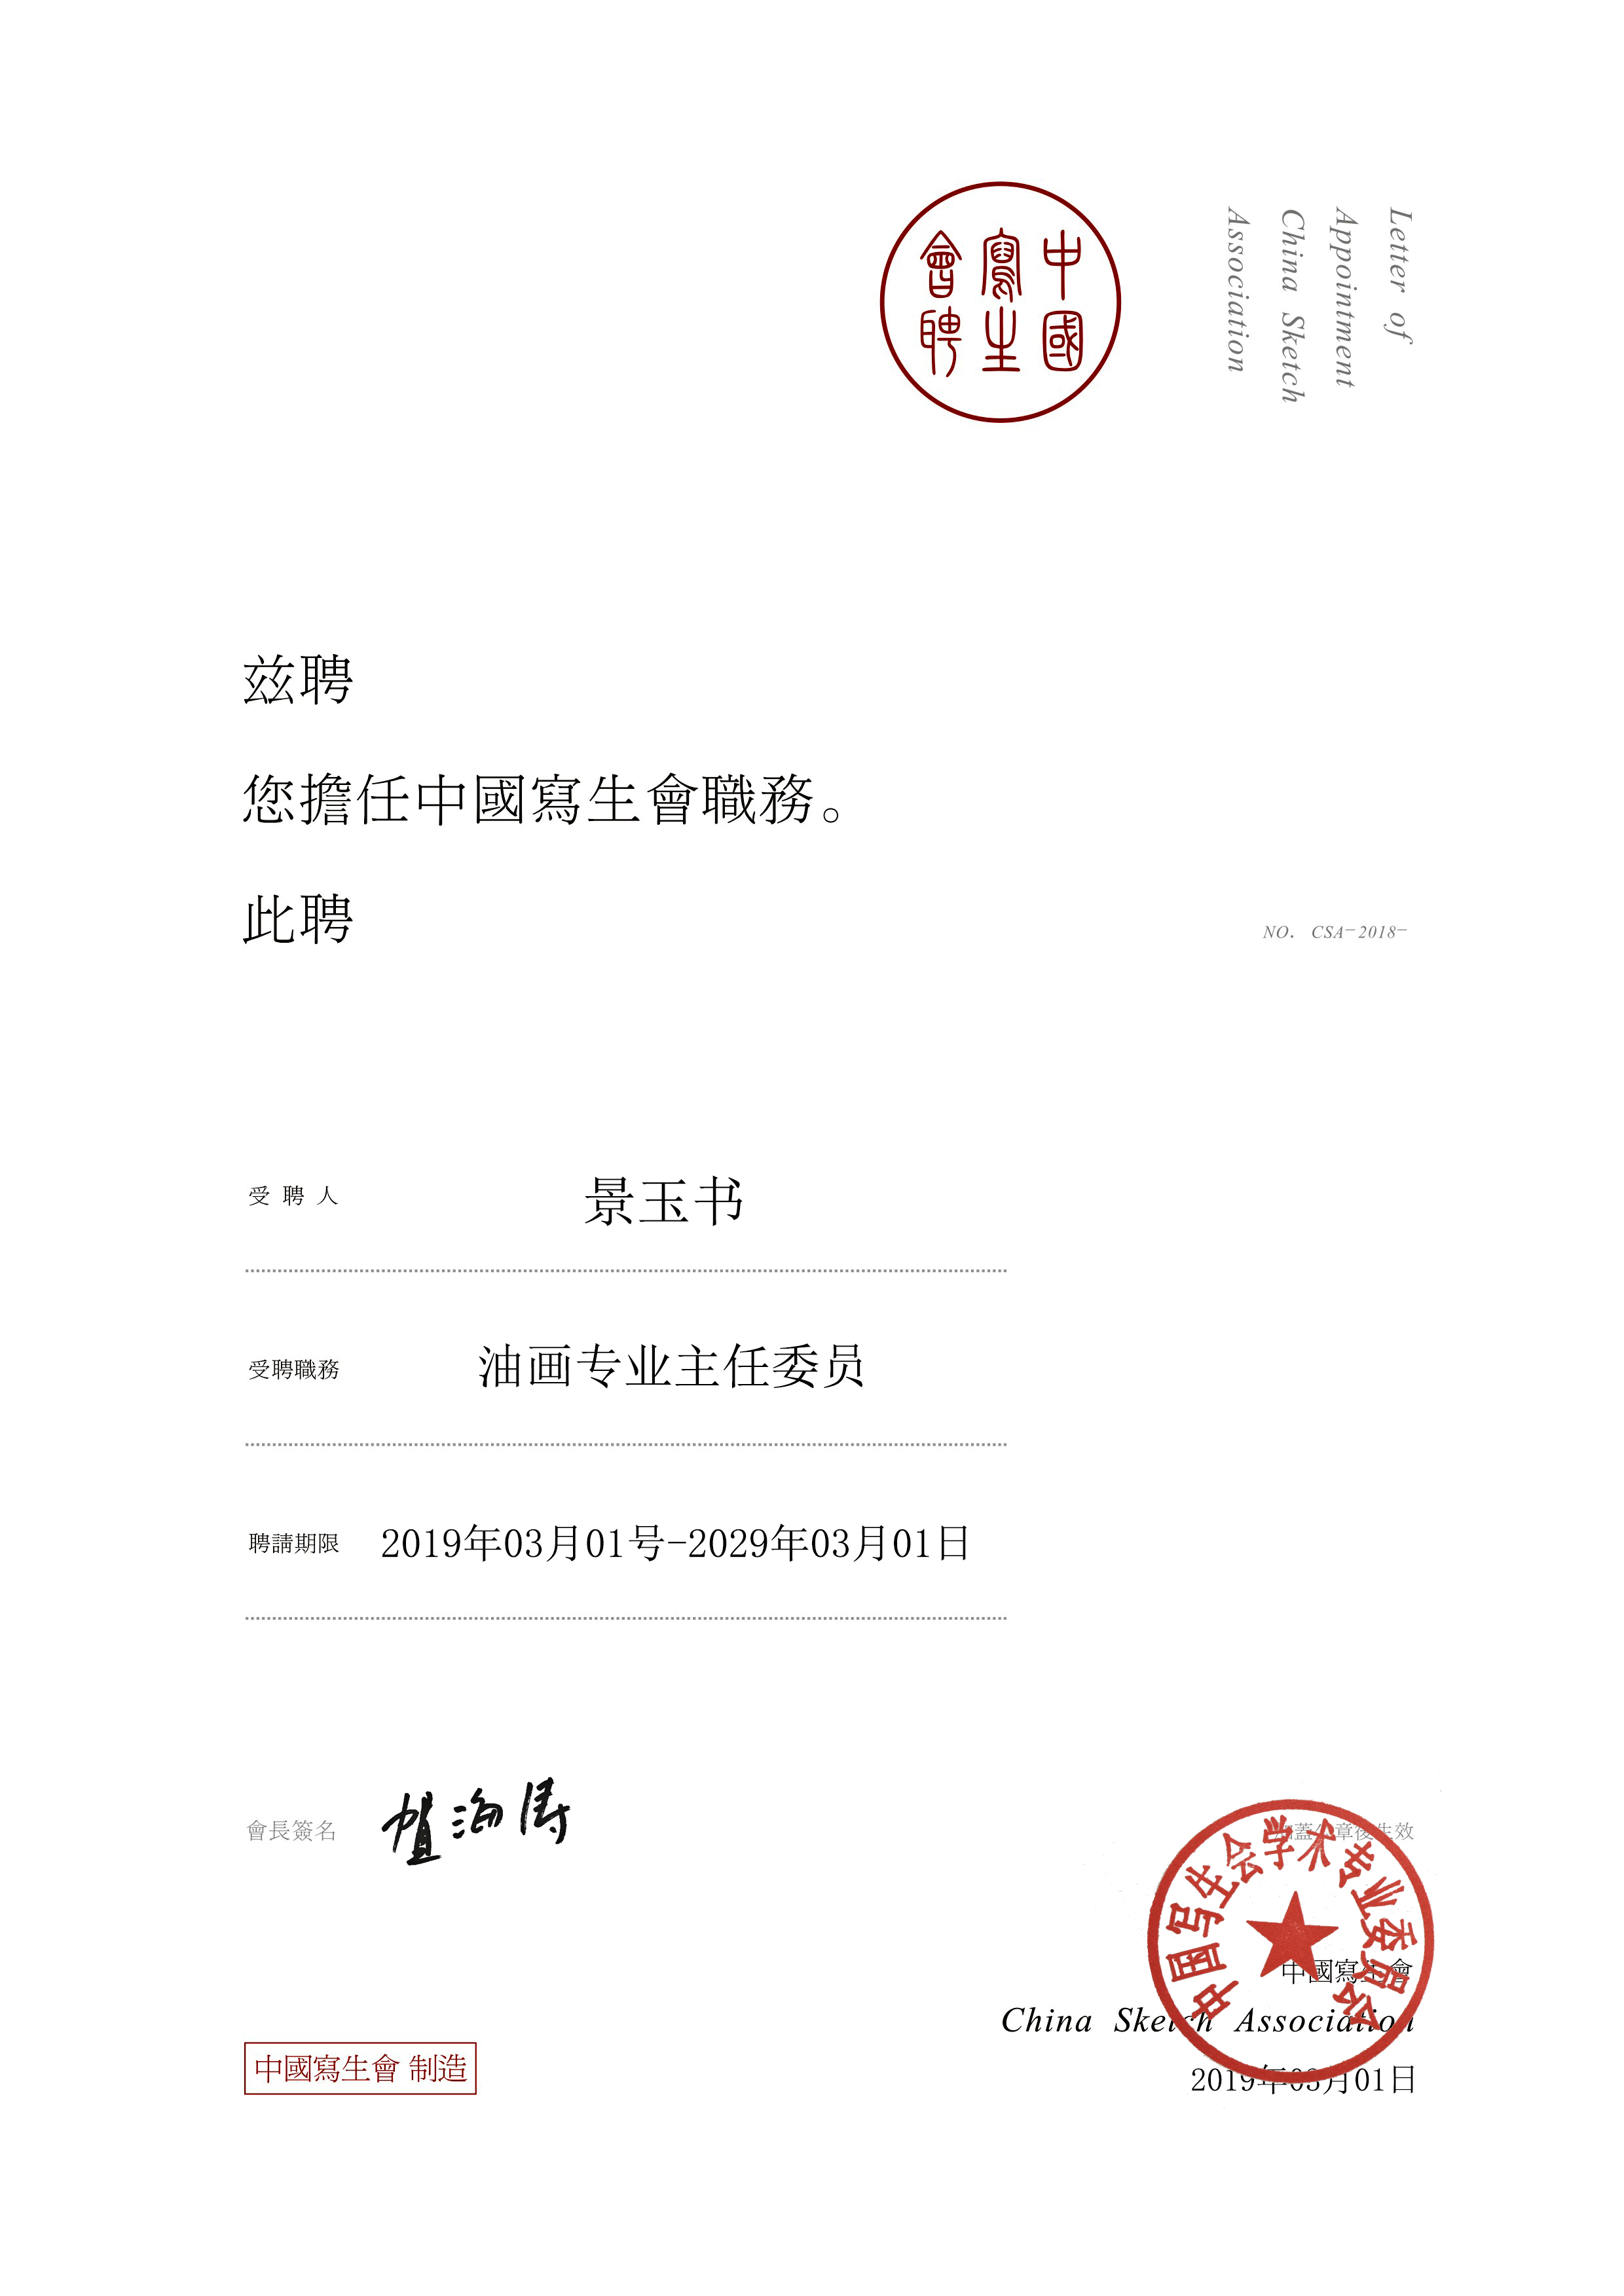 北京电影学院美术系景玉书教授接受中国写生会油画专业主任委员会聘书